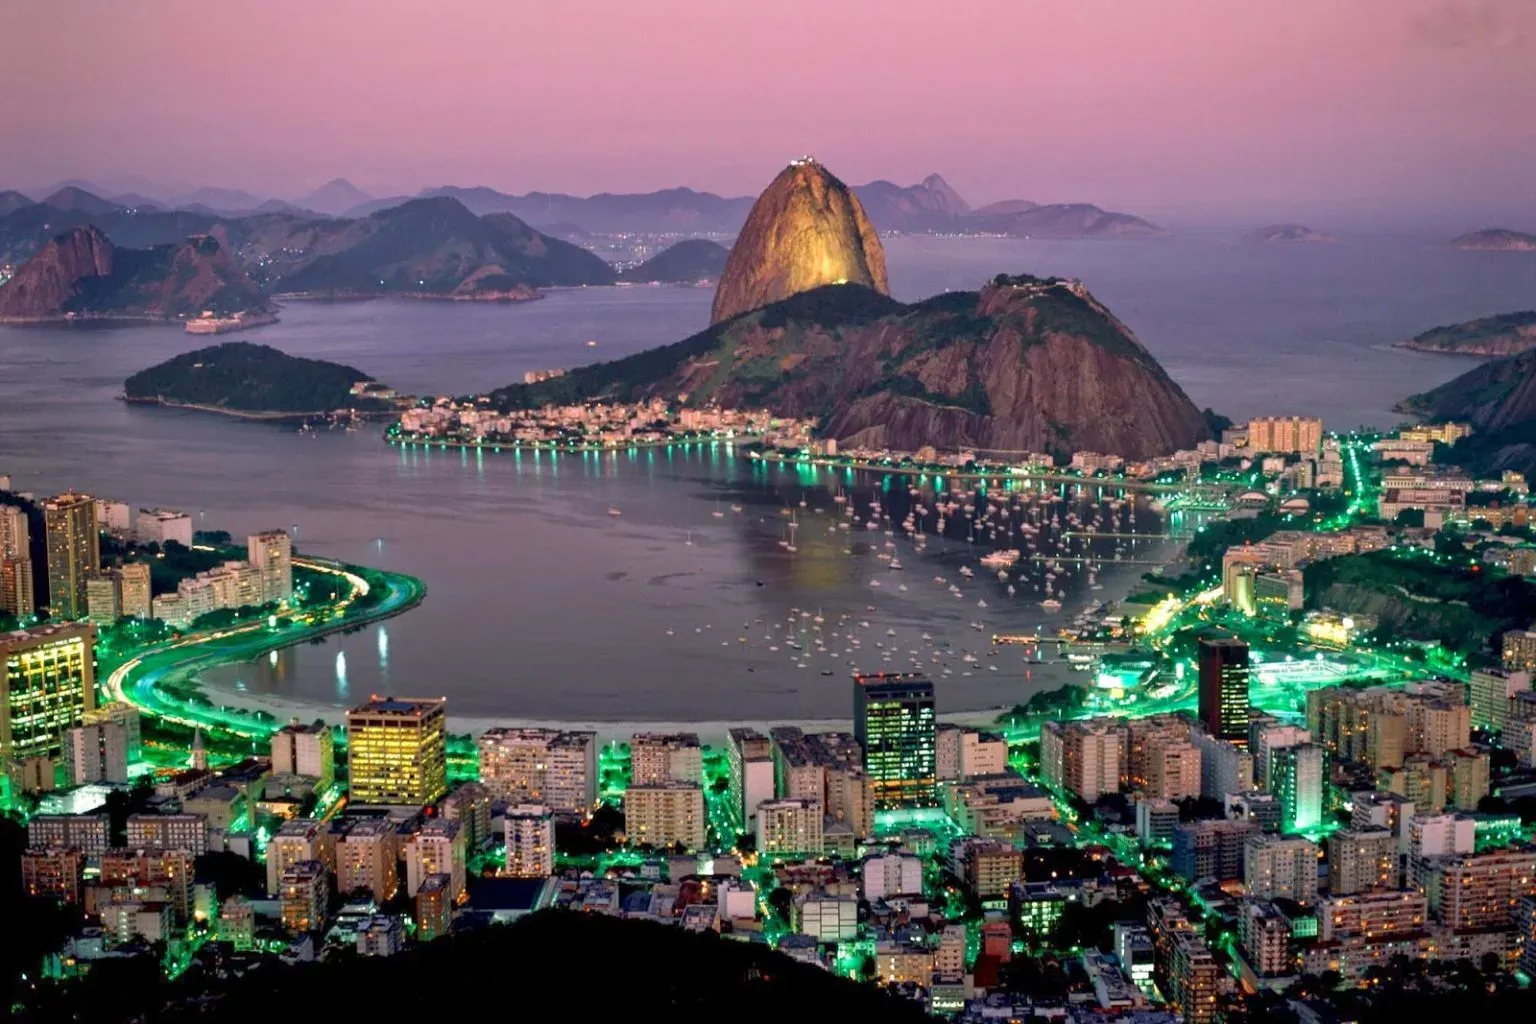 The Harbor of Rio de Janeiro